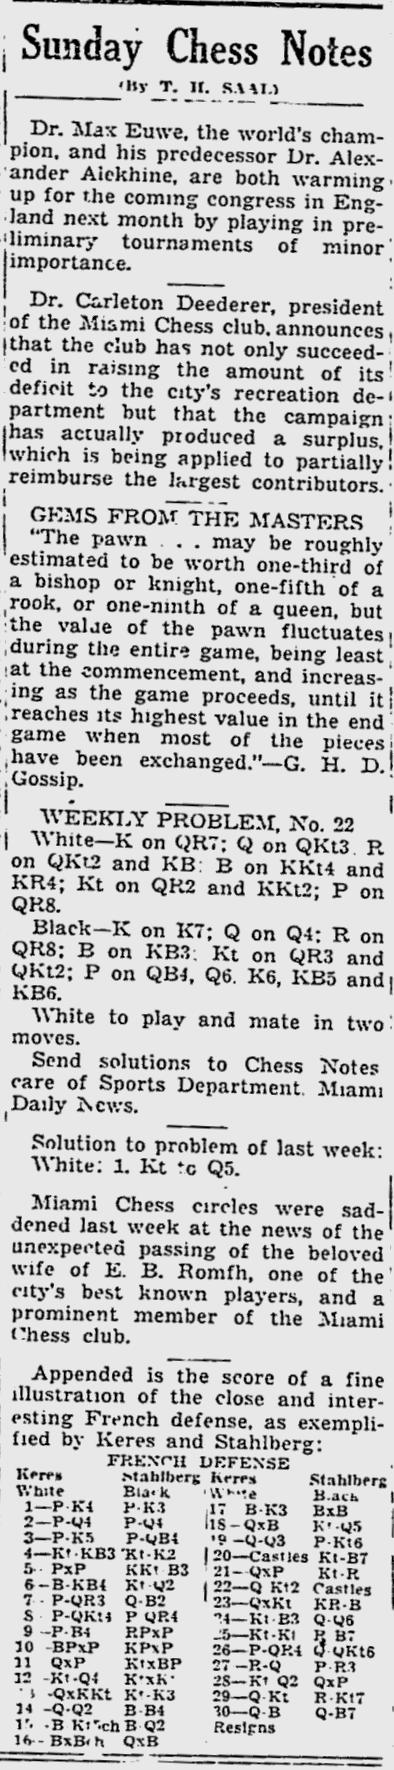 1936.07.26-01 Miami Daily News.jpg